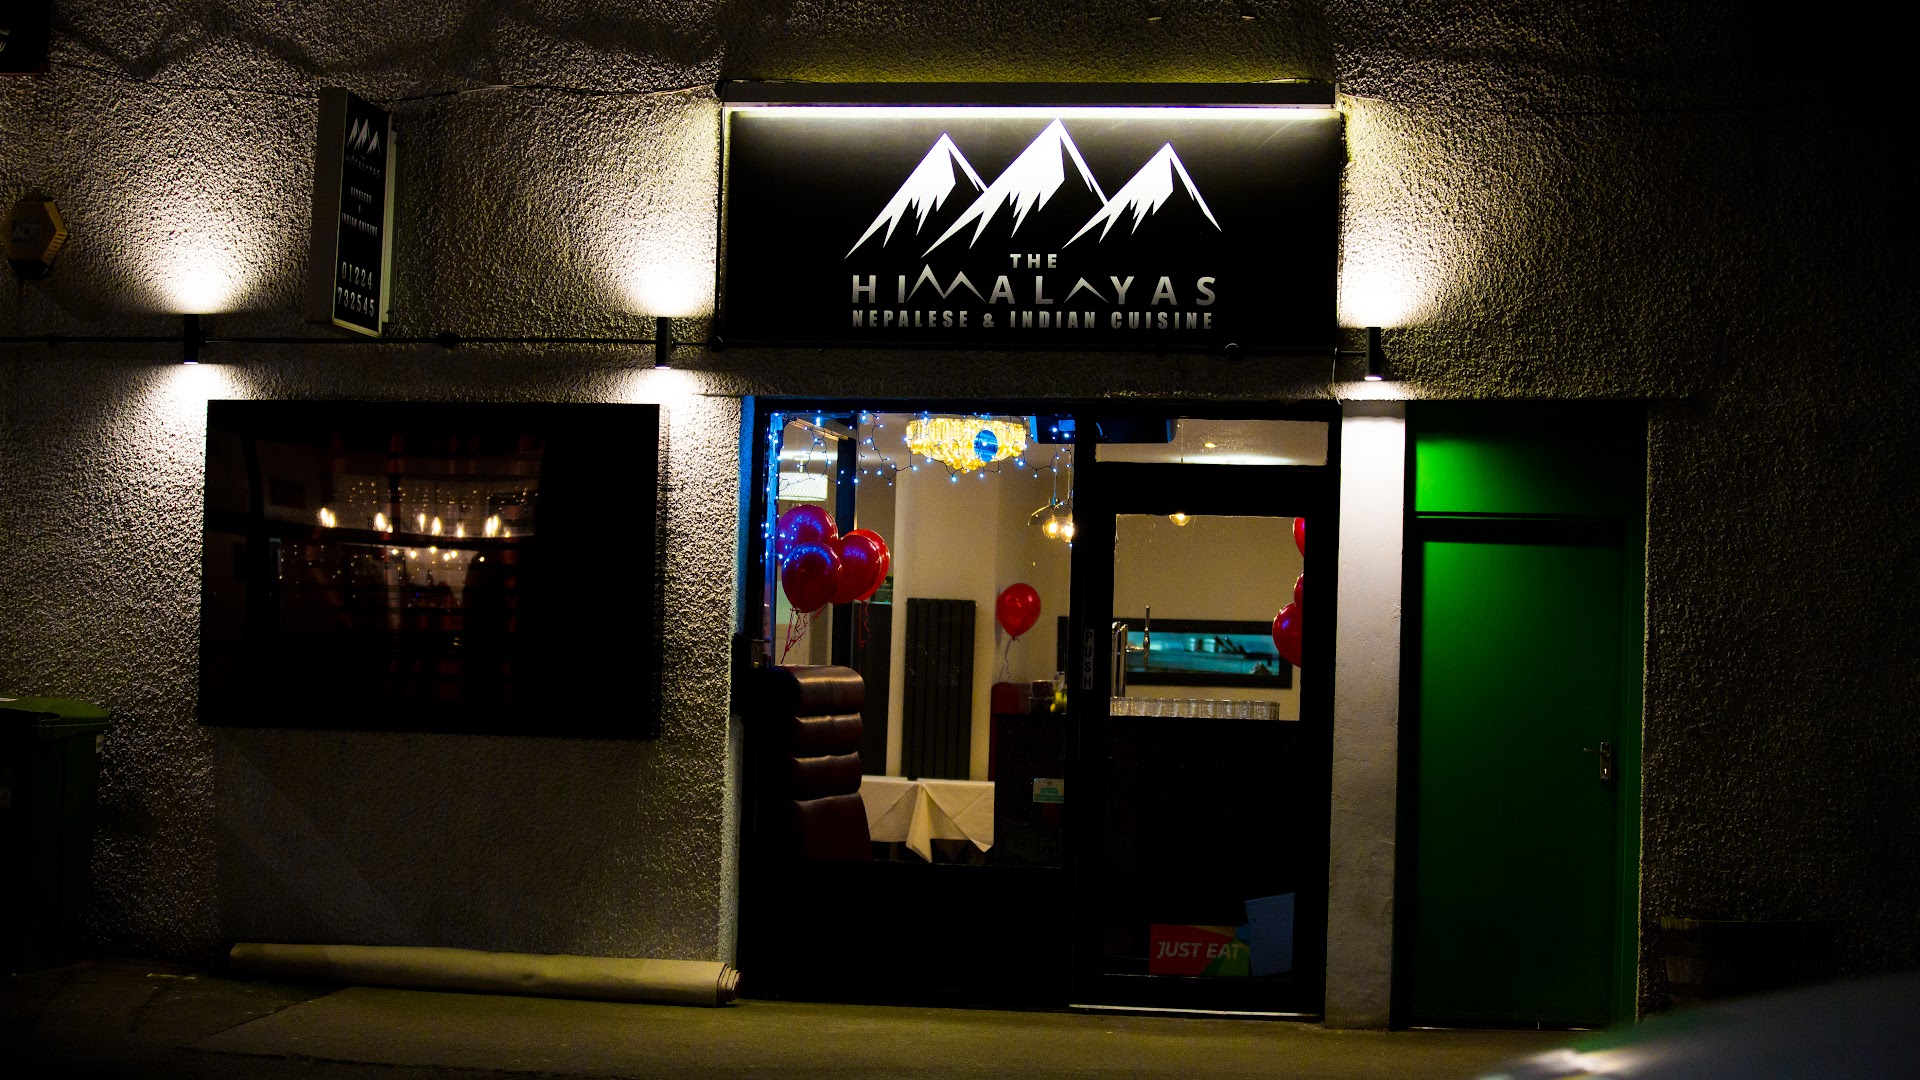 The Himalayas Restaurant